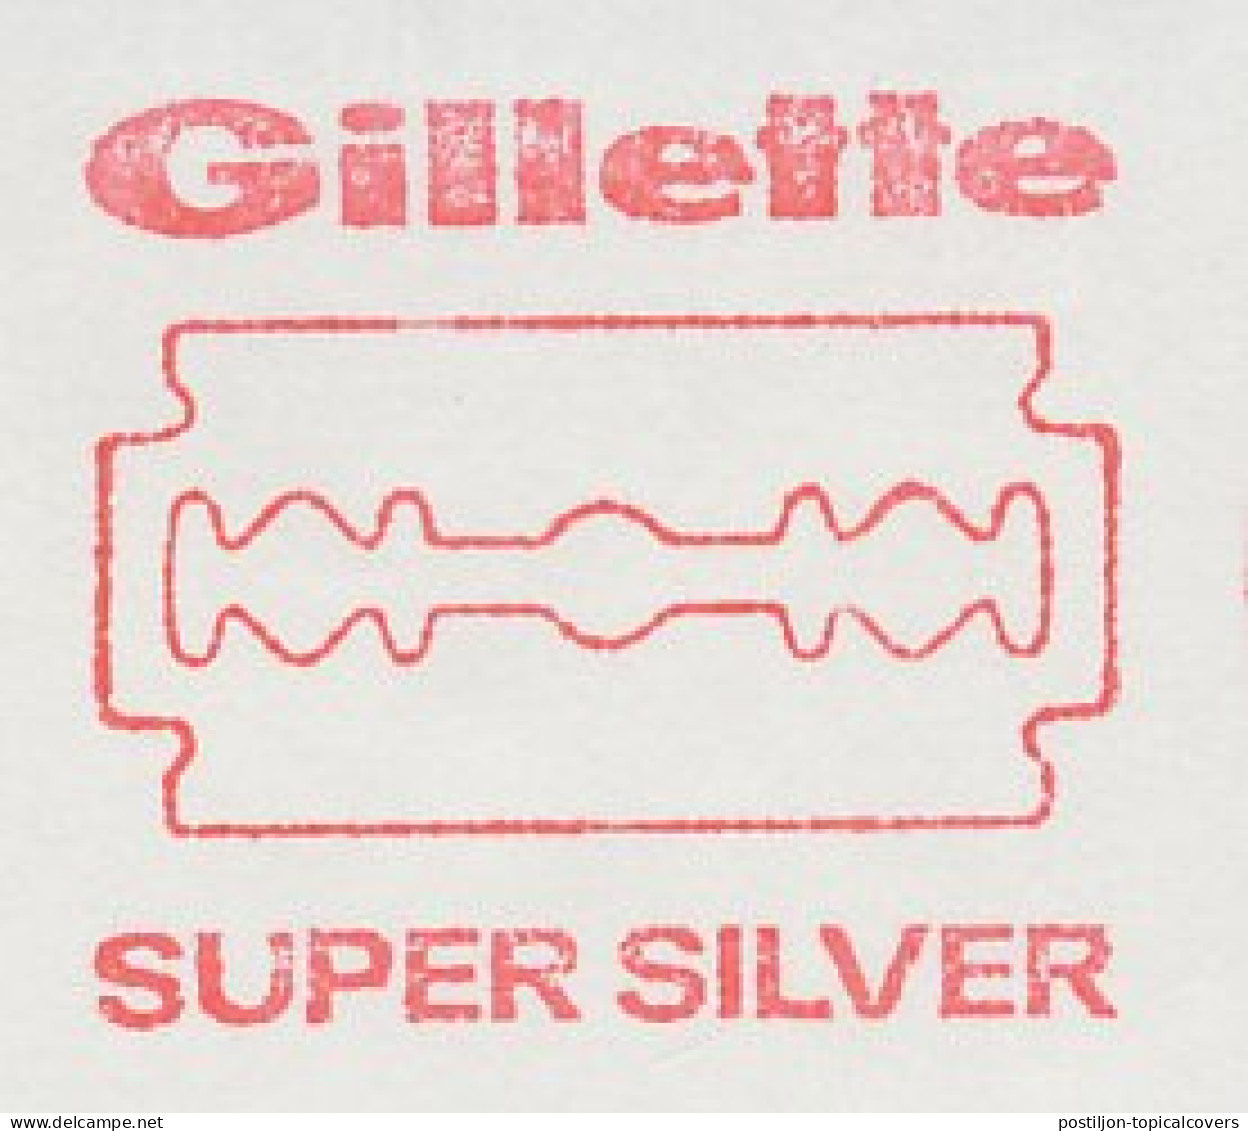 Meter Cut Switzerland 1977 Razor Blade - Gillette - Agricultura